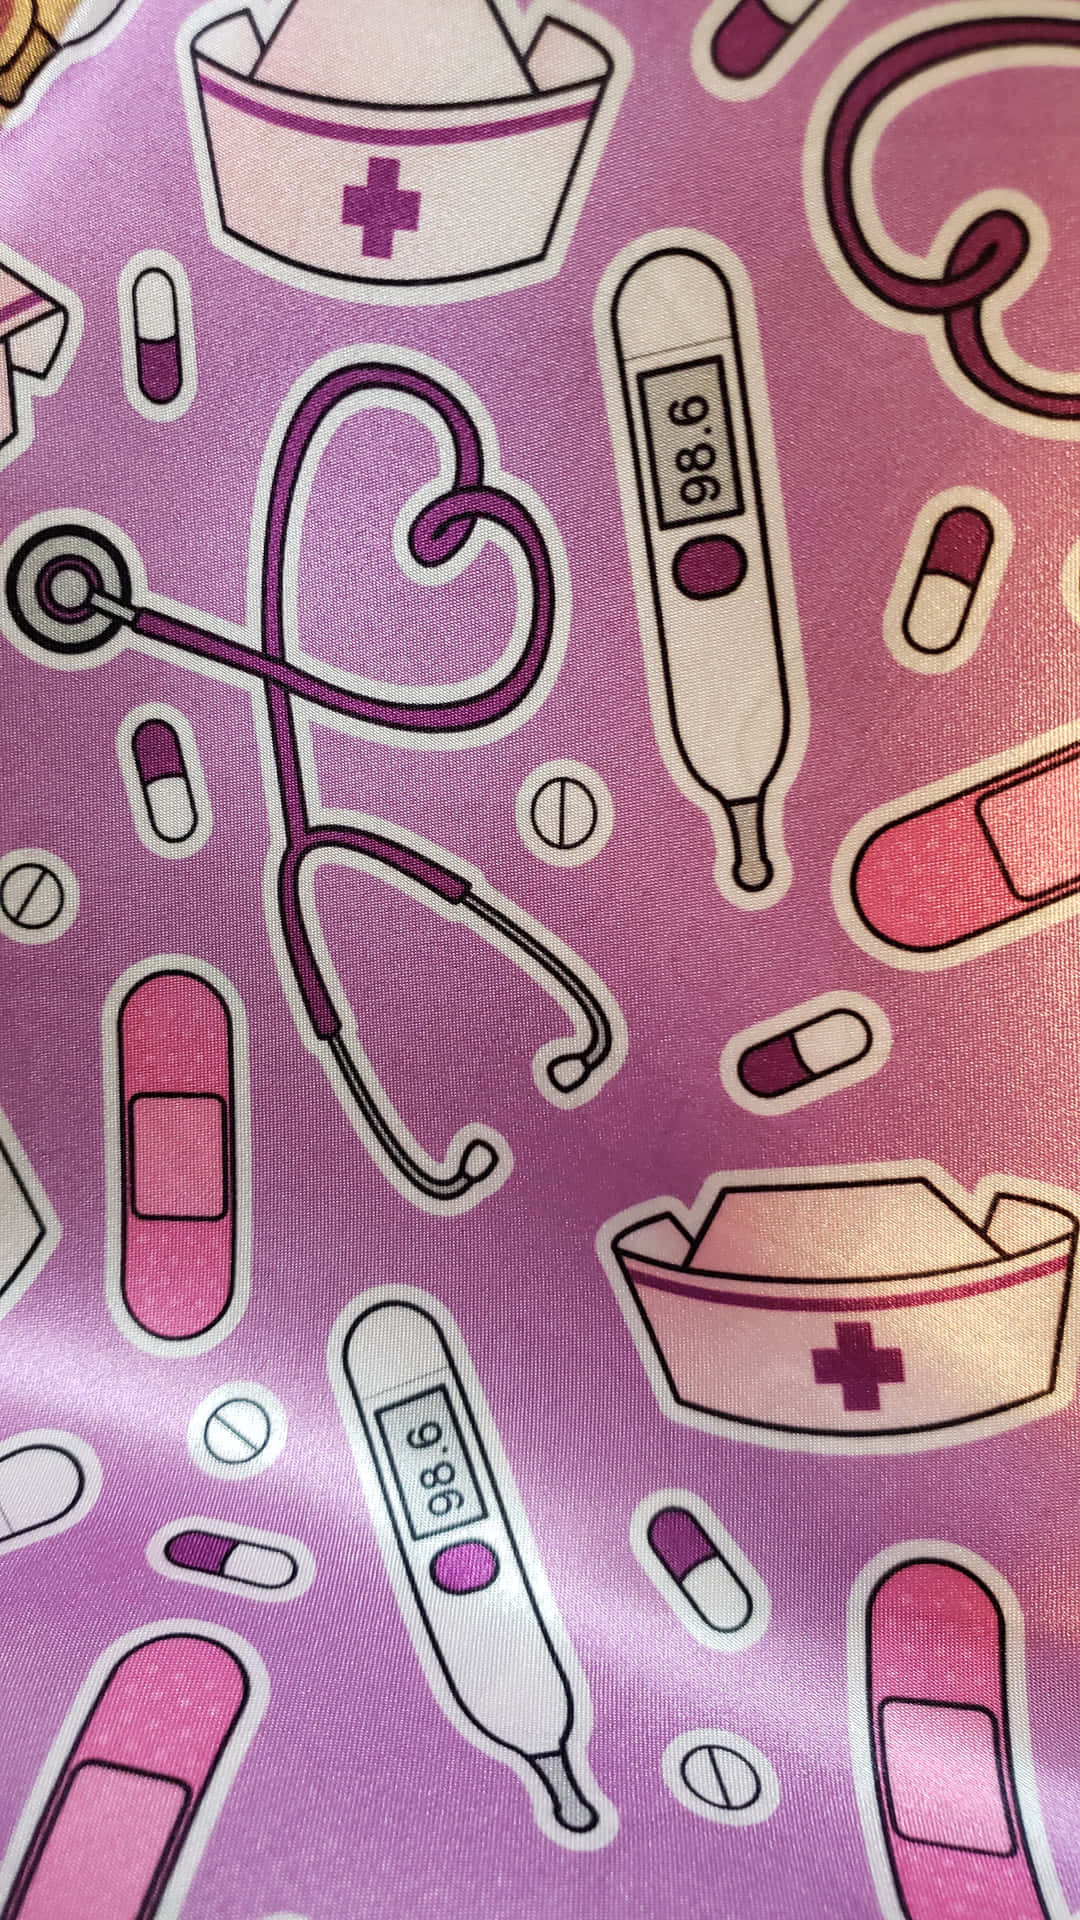 Et pink stof med en sygeplejerske og medicin på det. Wallpaper